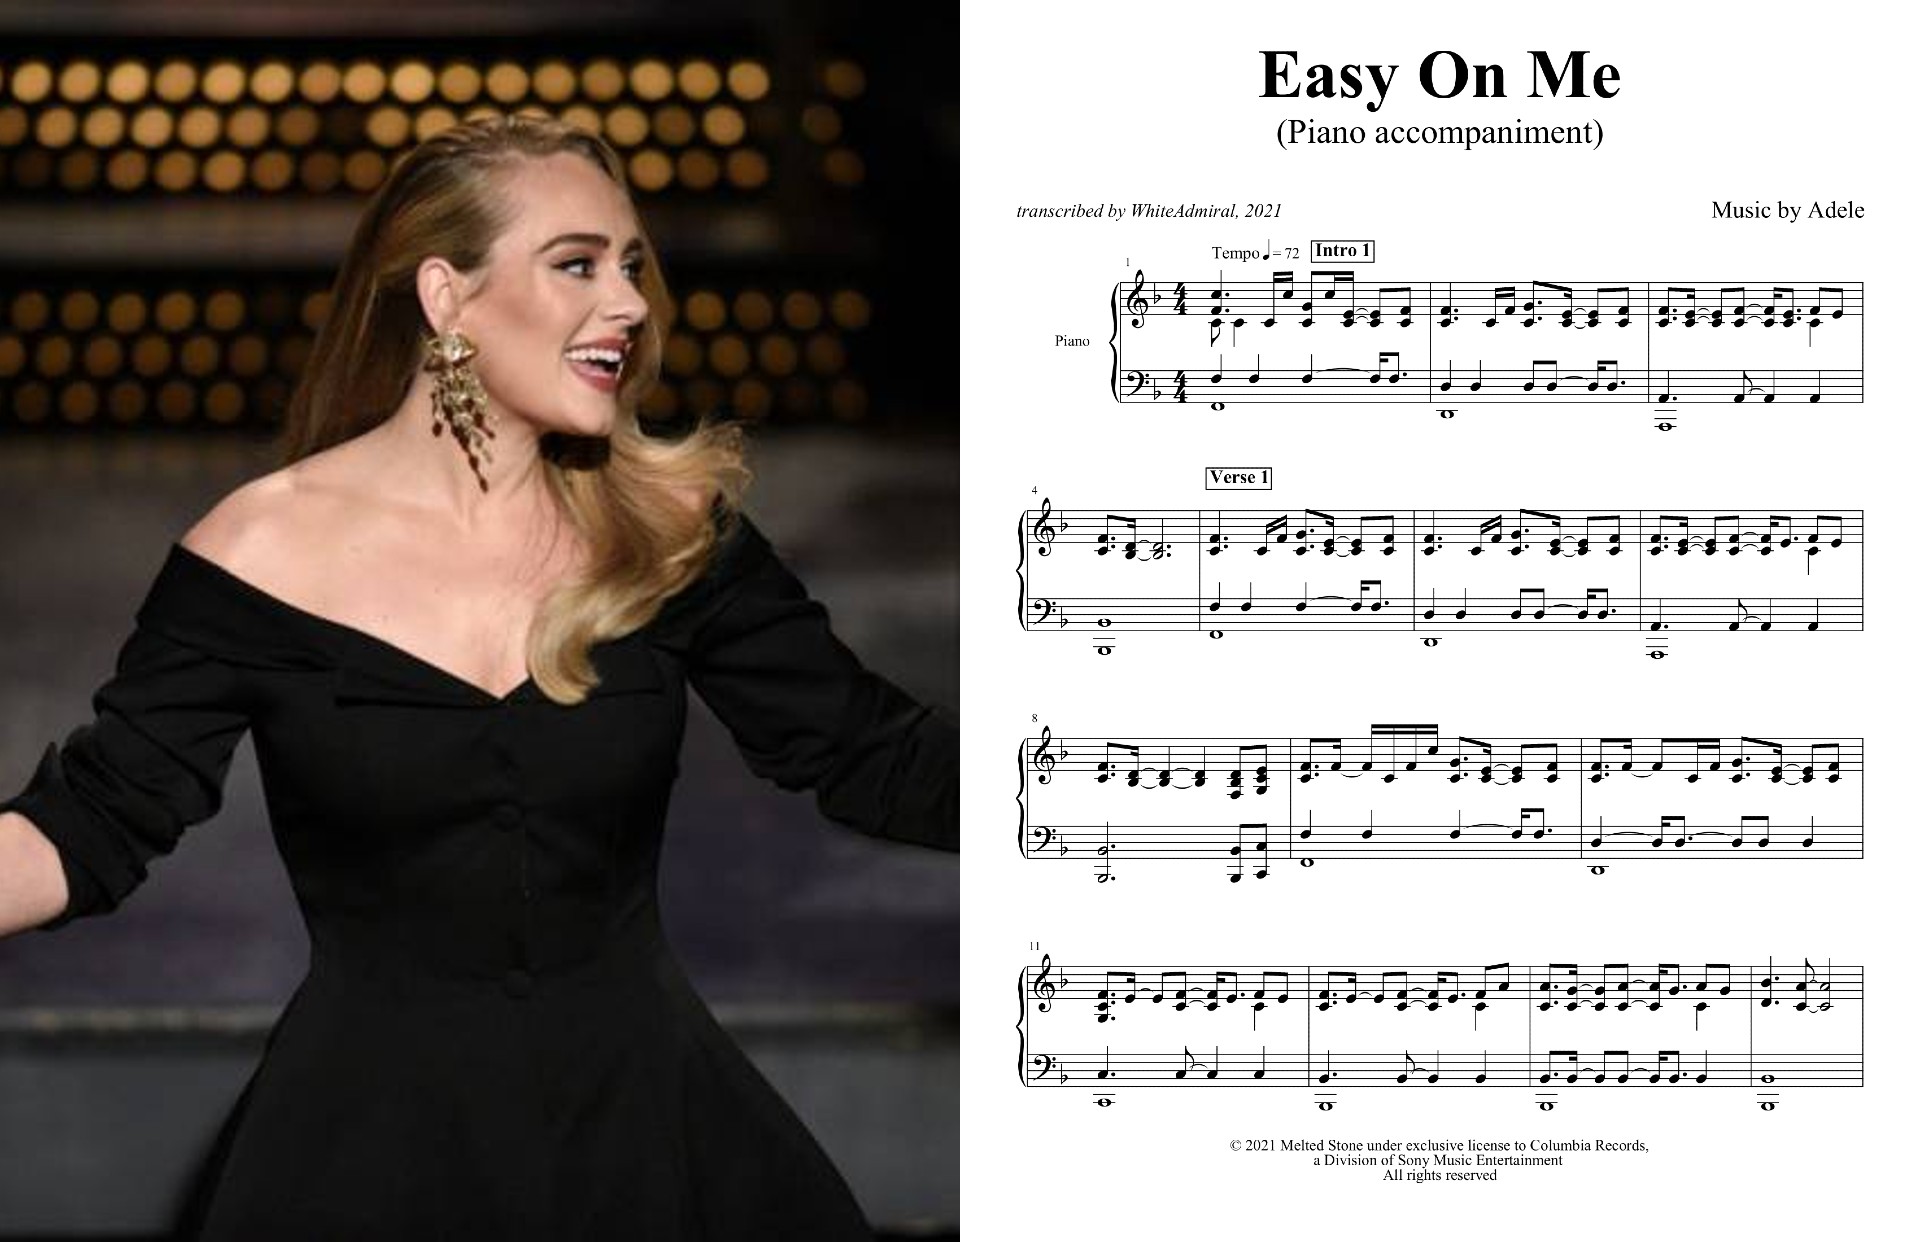 Easy On Me - Adele (piano accompaniment).jpg